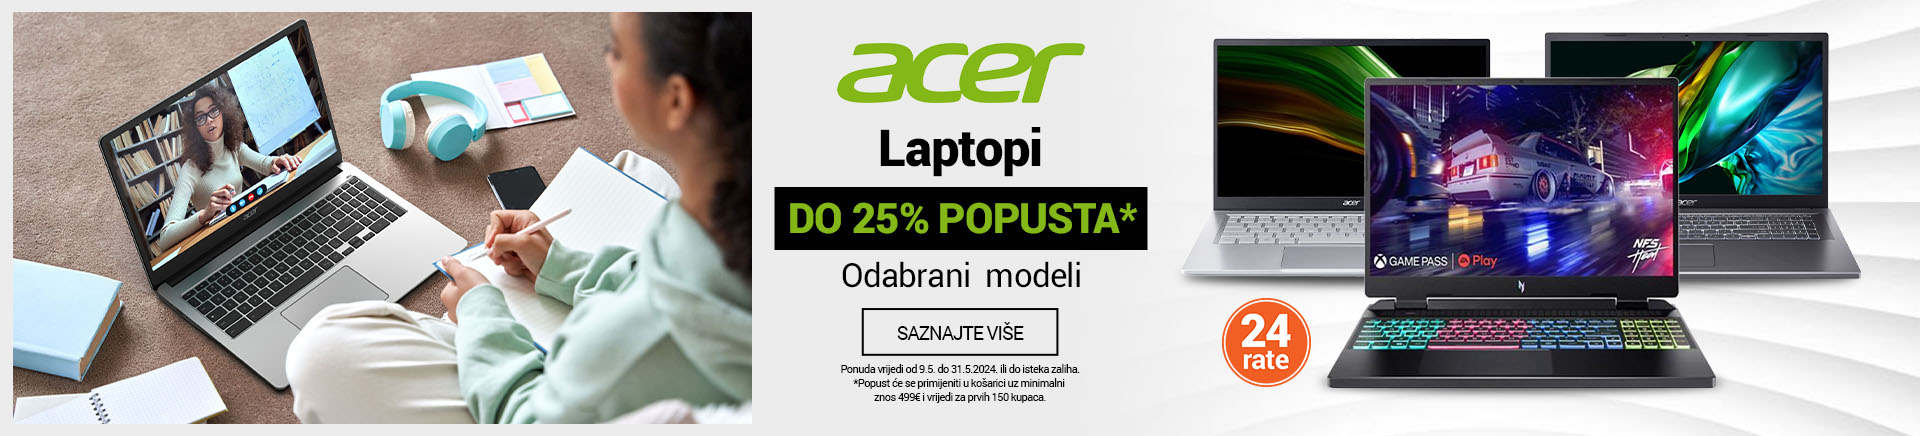 HR Acer laptopi 25posto 2 MOBILE 380 X 436.jpg